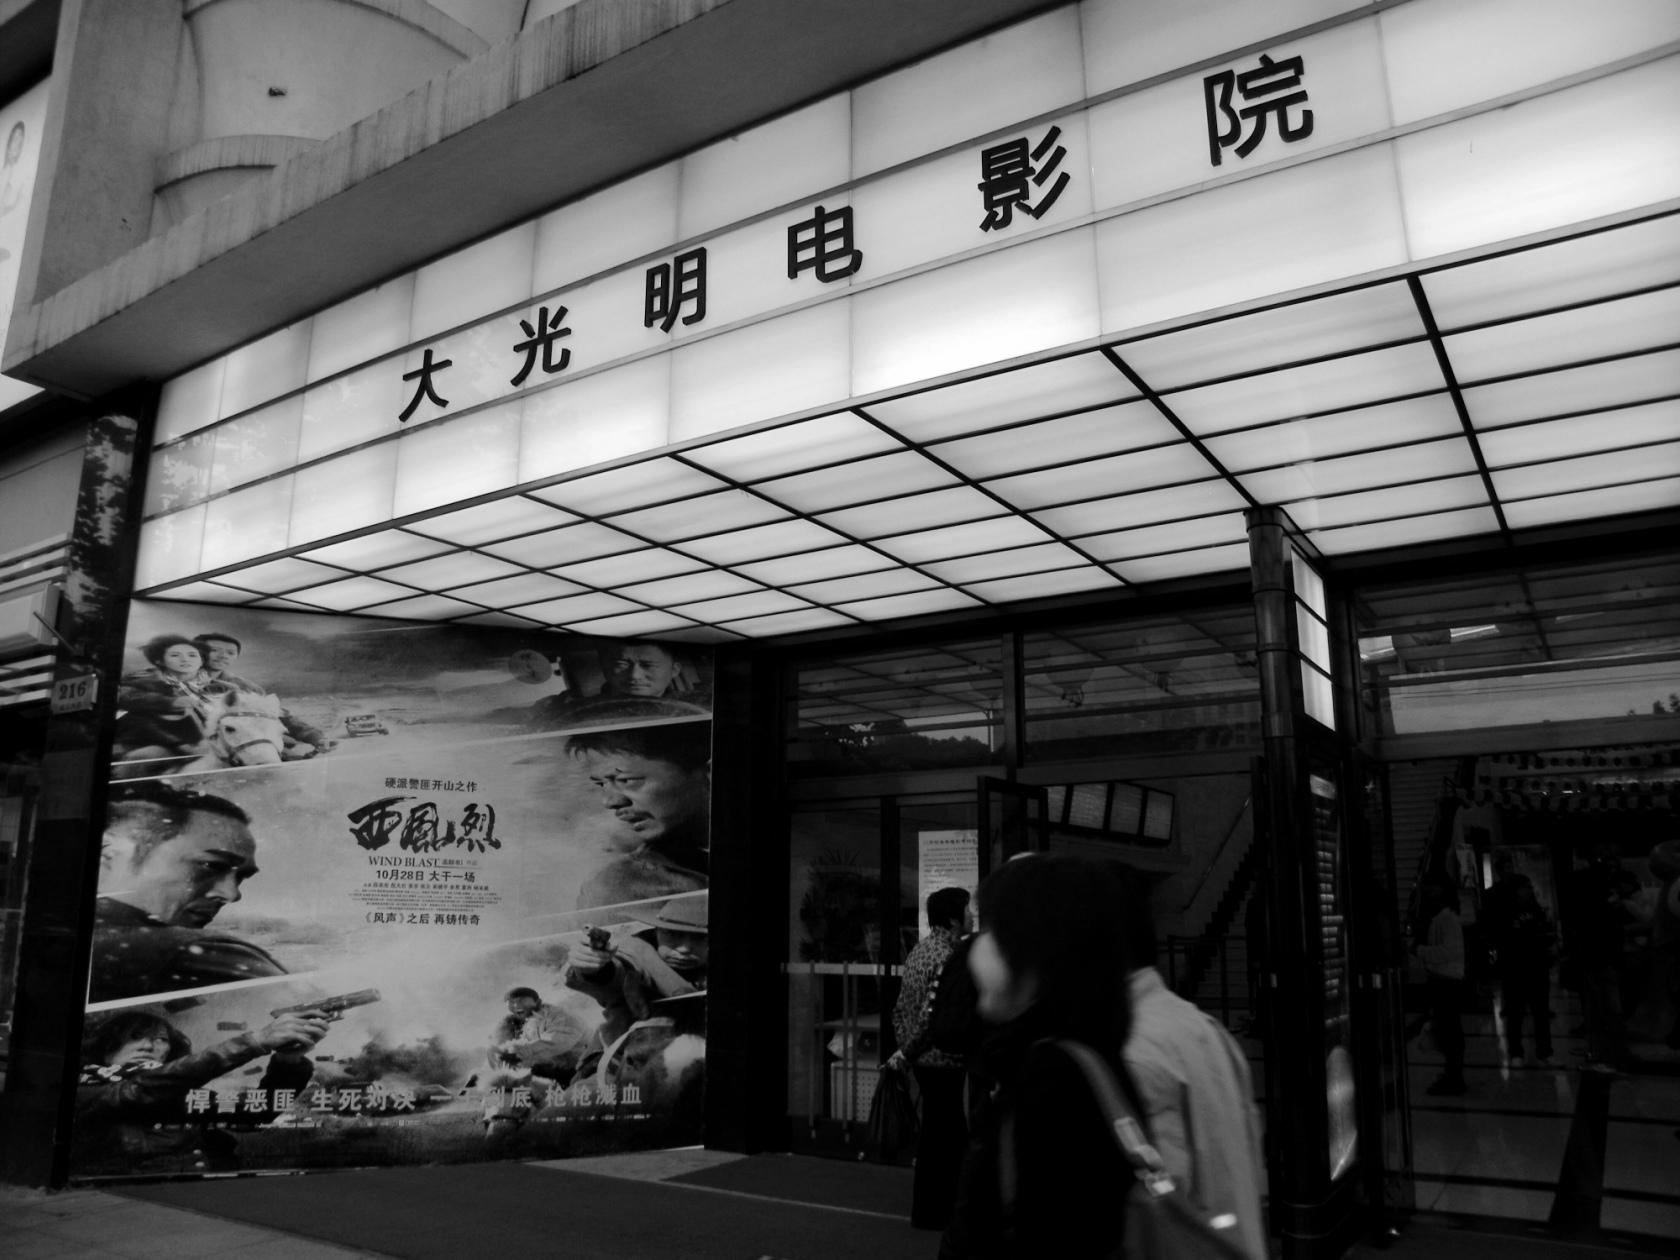 湖北省科技馆巨幕4D影院亮相-荆楚网-湖北日报网